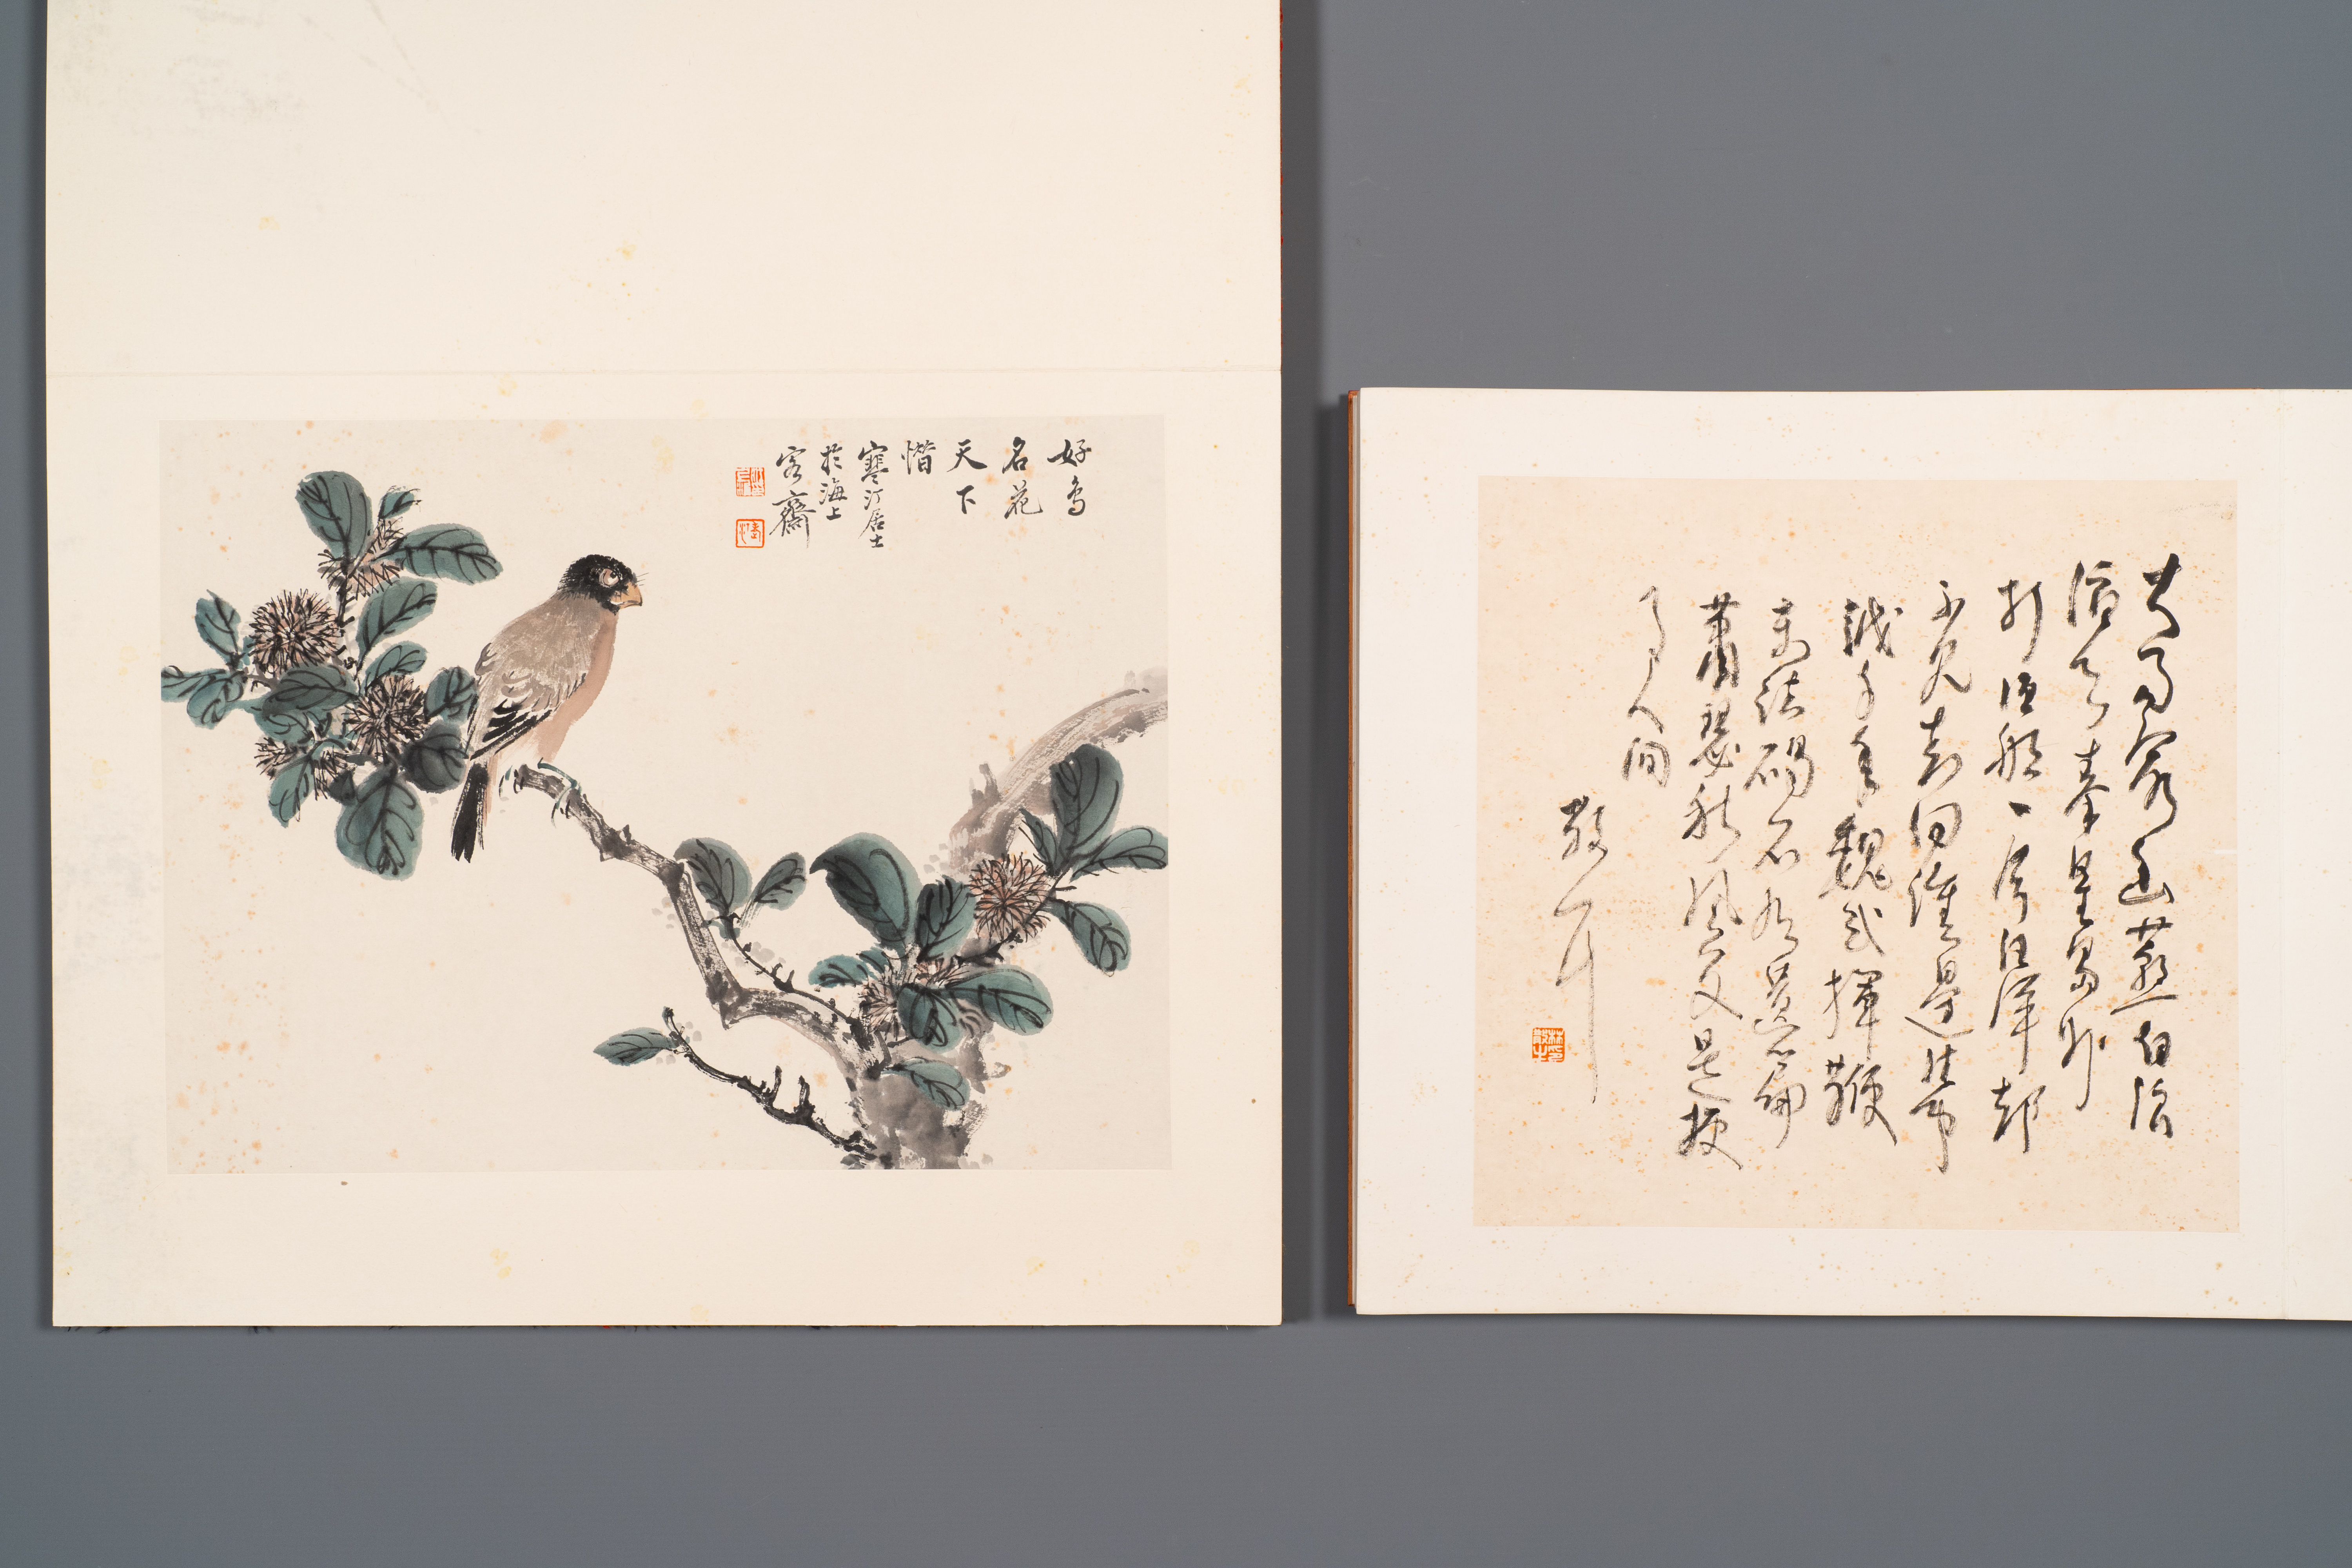 Three albums: 'Jiang Hanting æ±Ÿå¯’æ±€ (1904-1963), Lin Sanzhi æž—æ•£ä¹‹ (1898-1989) and Qi Gong å¯ - Image 5 of 23